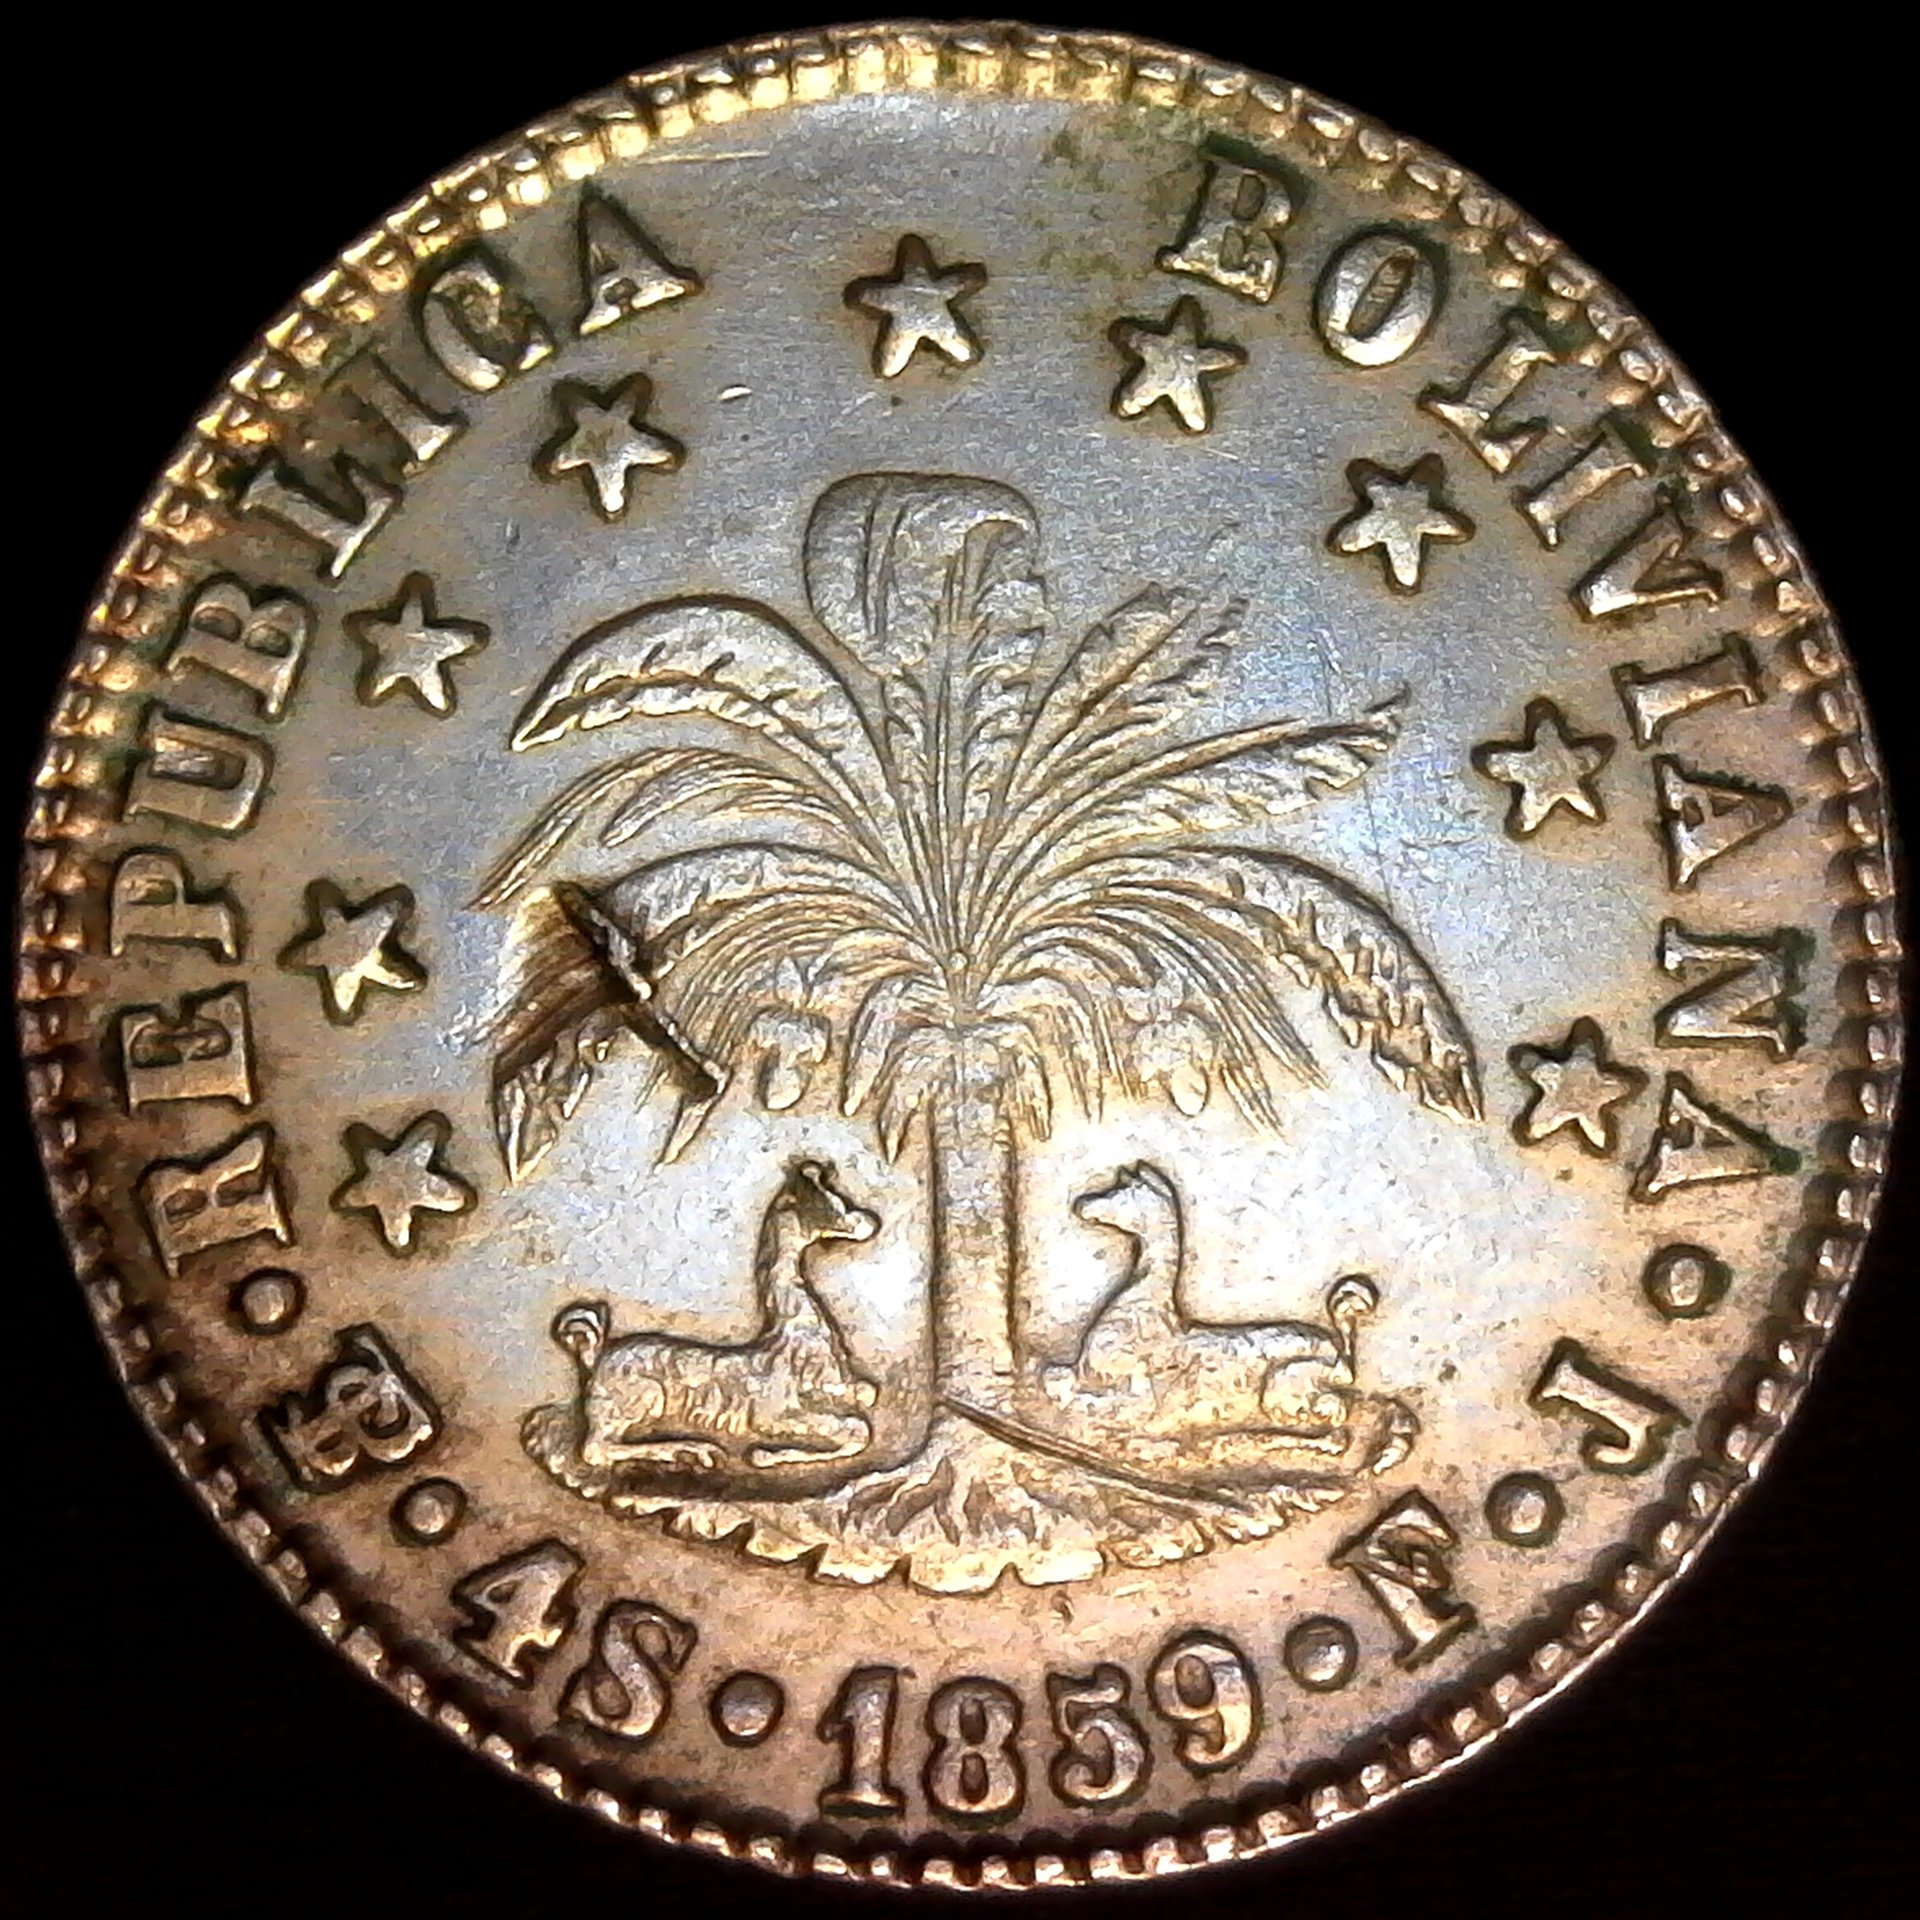 Bolivia 1859 Republica Boliviana - Bolivar - 4 Soles  rev.jpg